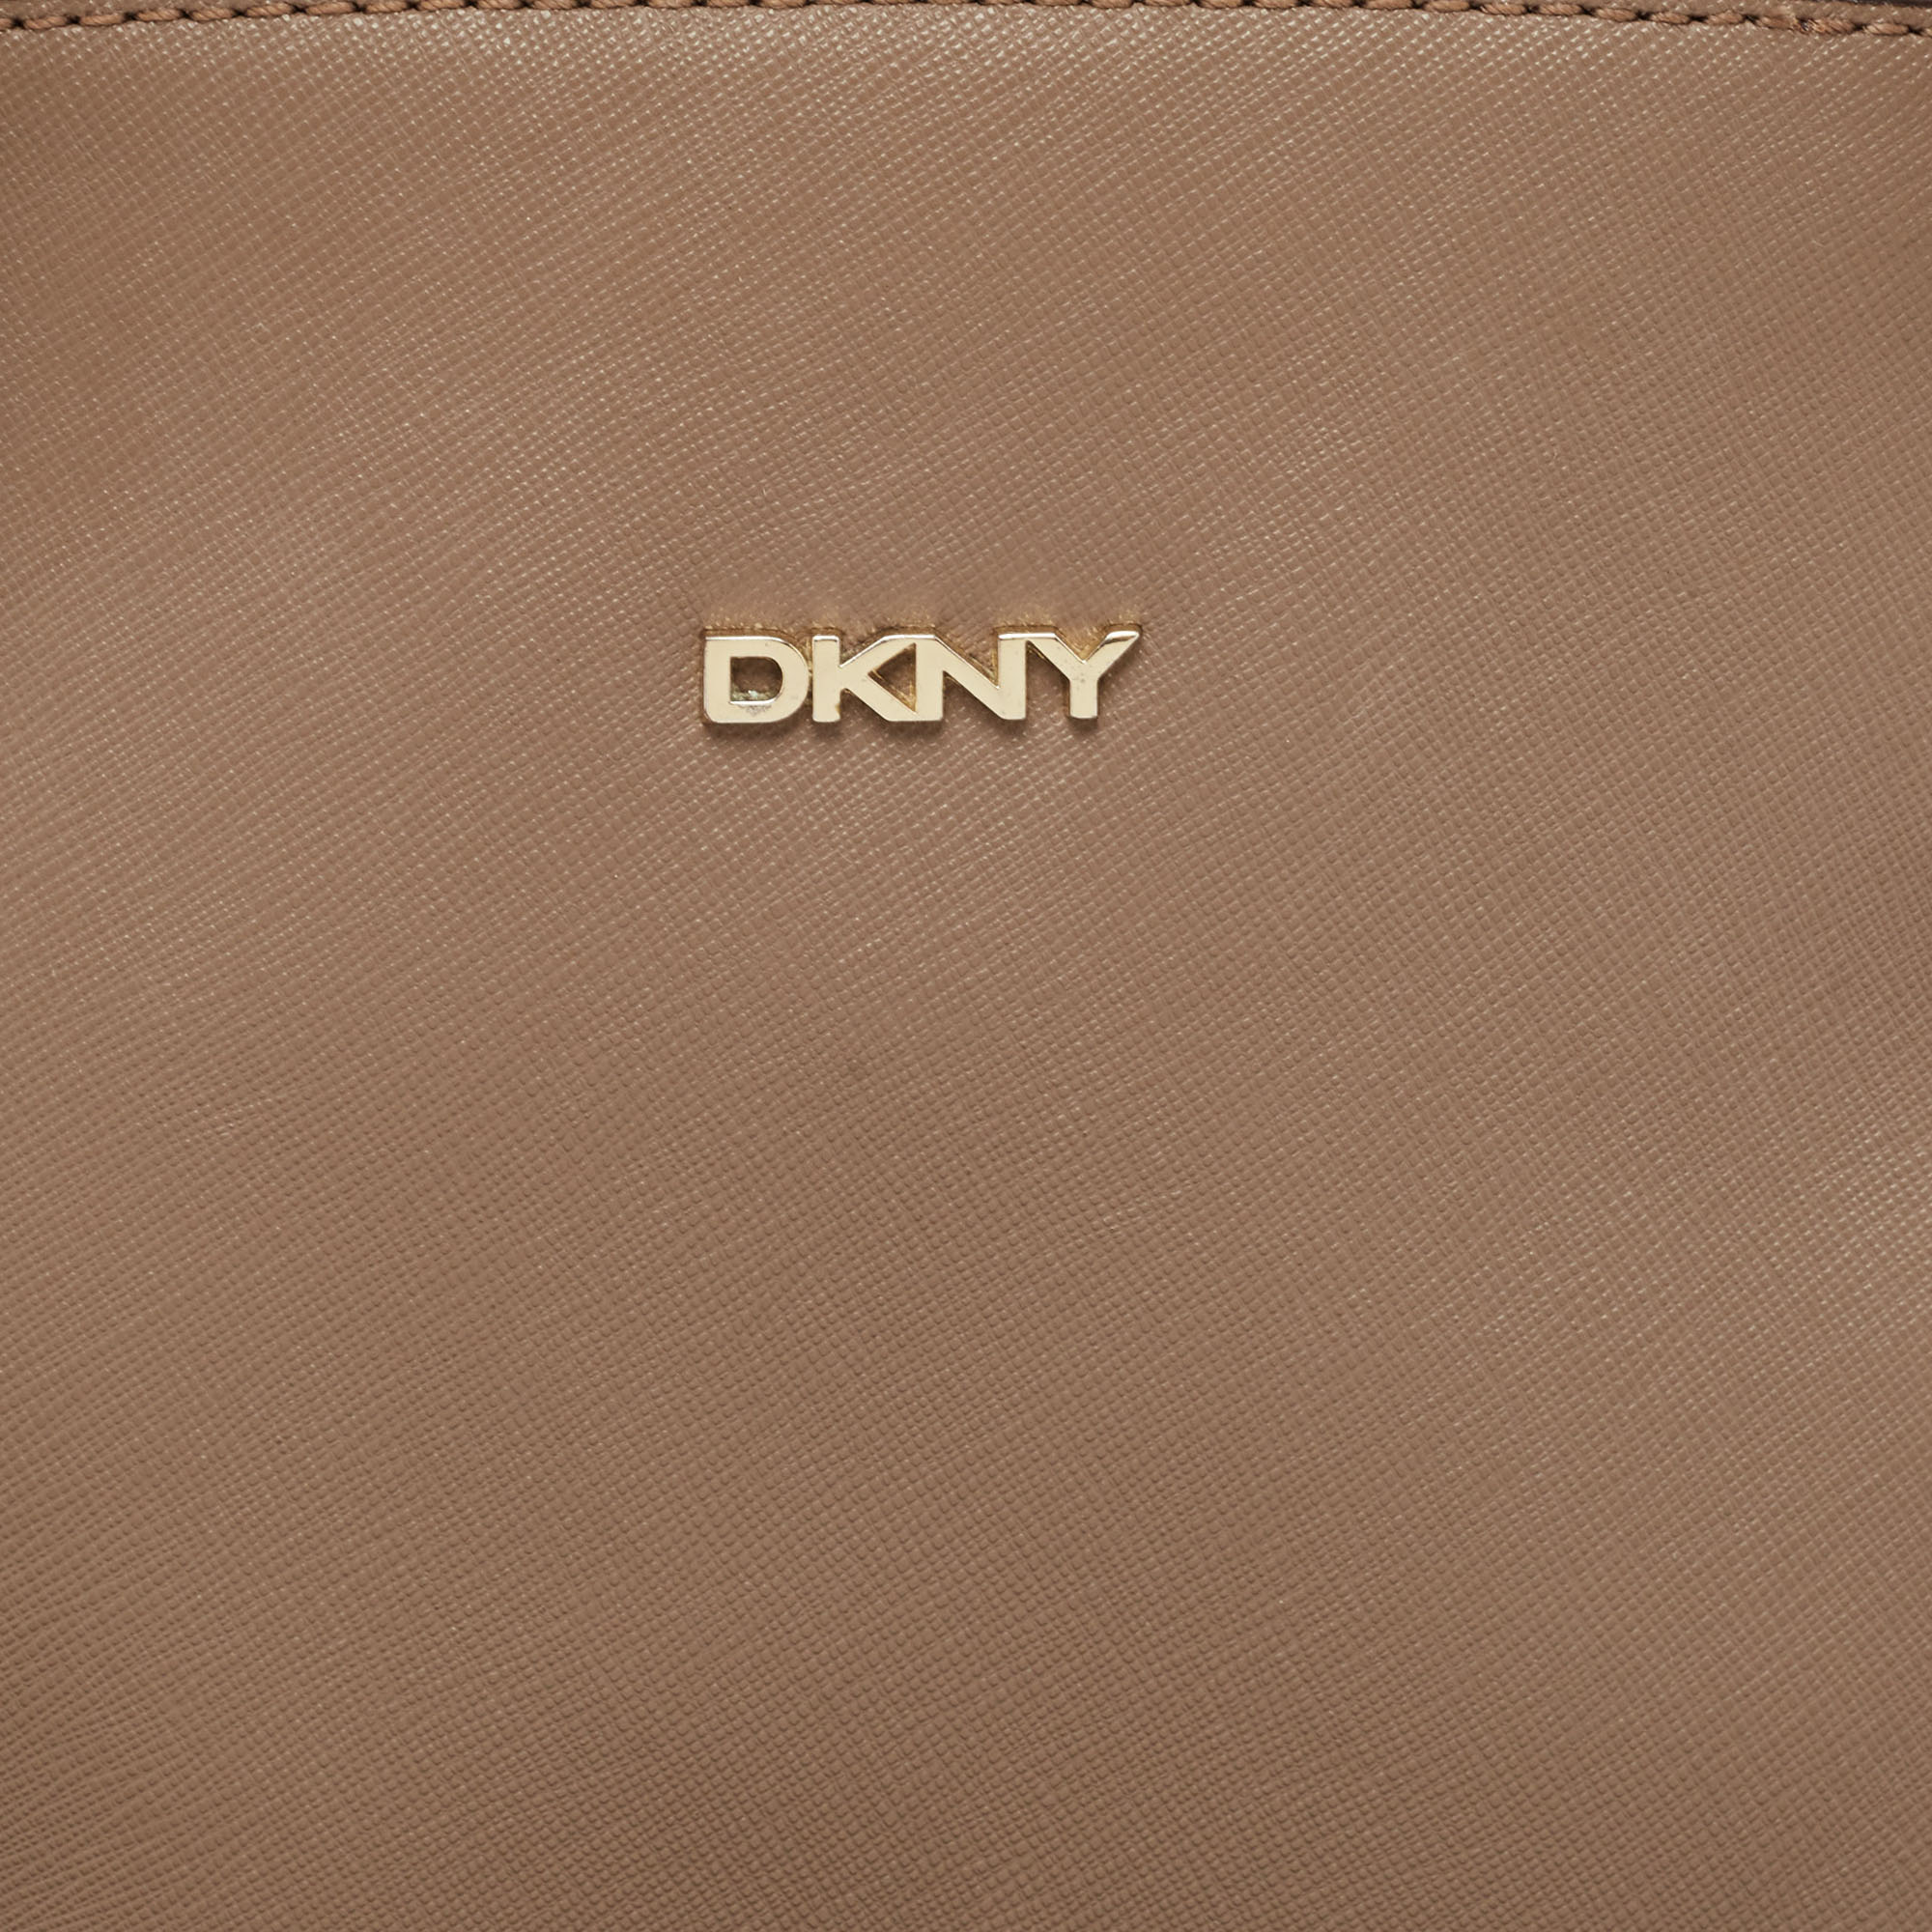 DKNY Beige Leather Dome Shoulder Bag